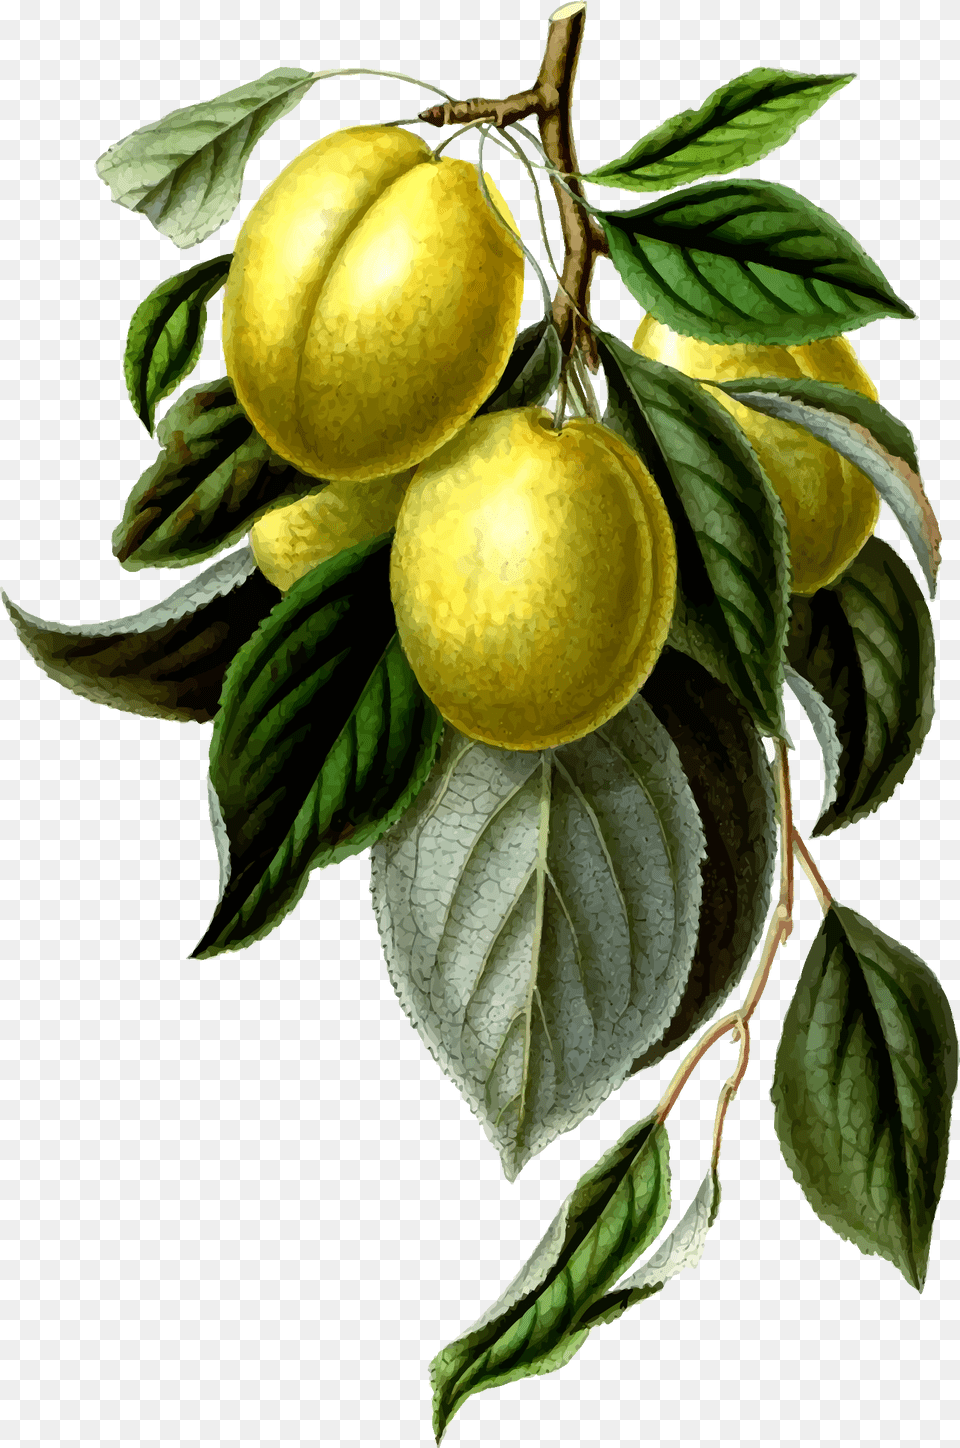 This Free Icons Design Of Golden Esperen Plum Lemon Vintage, Food, Fruit, Leaf, Plant Png